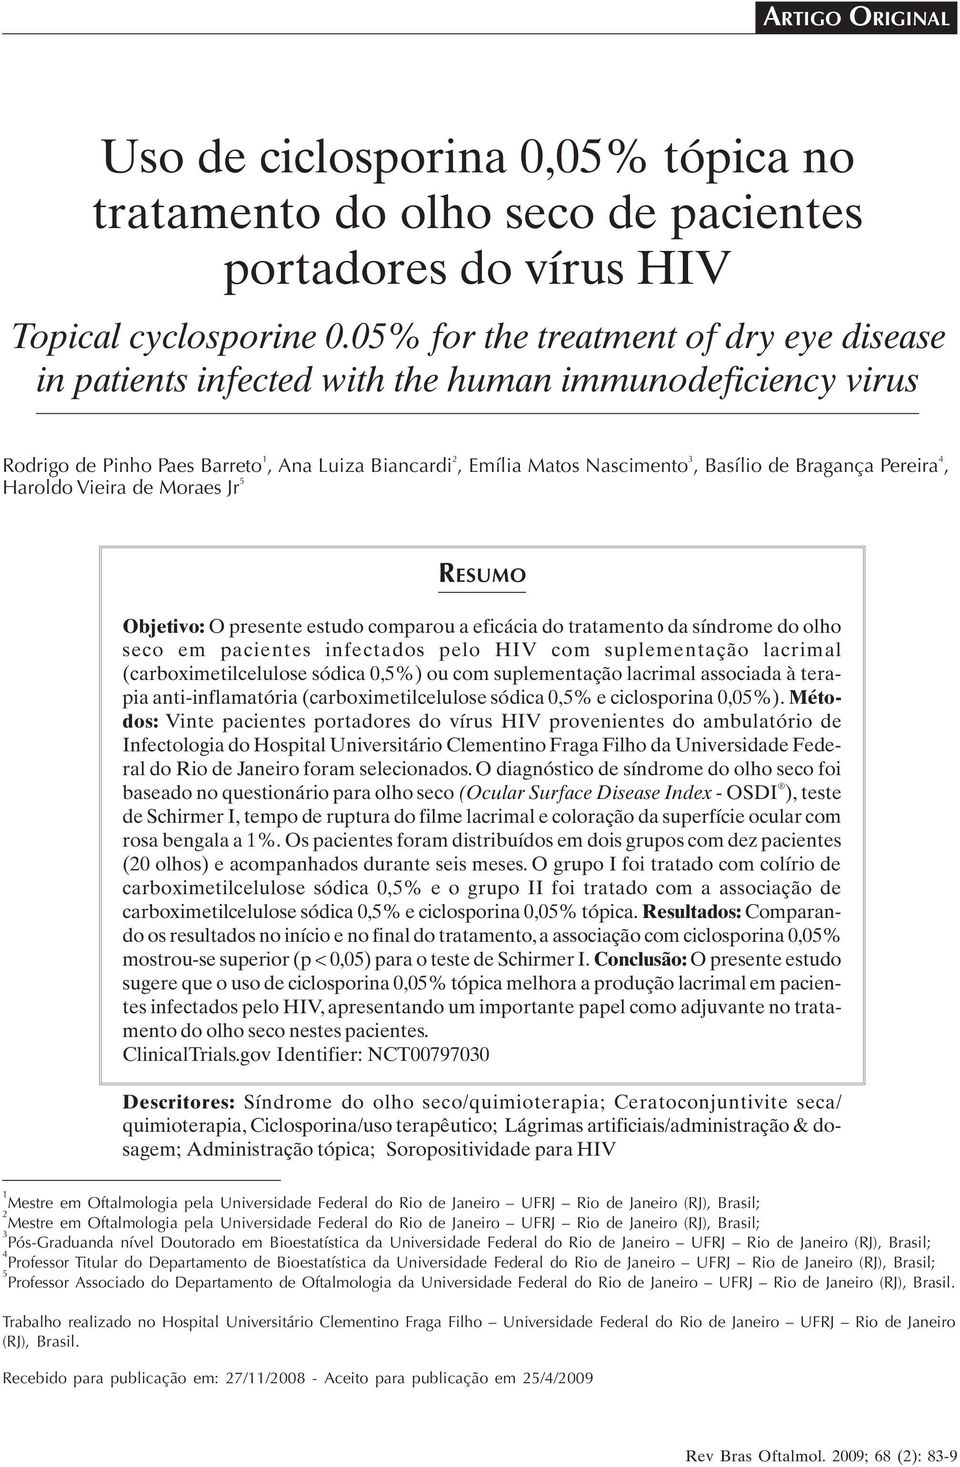 Bragança Pereira 4, Haroldo Vieira de Moraes Jr 5 RESUMO Objetivo: O presente estudo comparou a eficácia do tratamento da síndrome do olho seco em pacientes infectados pelo HIV com suplementação